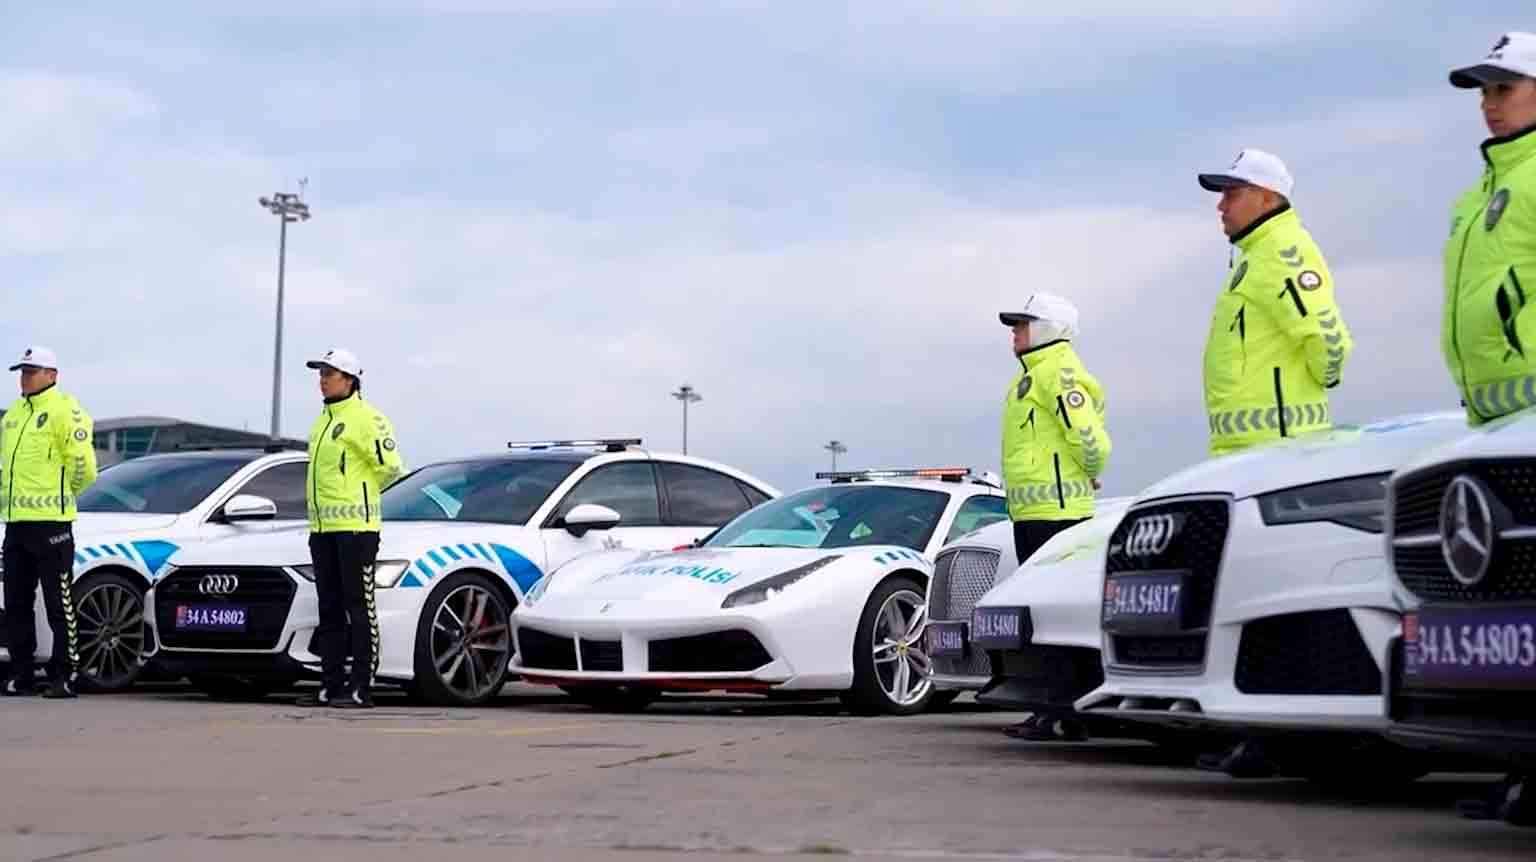 Poliția din Istanbul integrează Ferrari, Bentley și Porsche confiscate într-o operațiune antidrog în flota de patrulare. Fotografii și videoclipuri: Reprodução Twitter @AliYerlikaya 